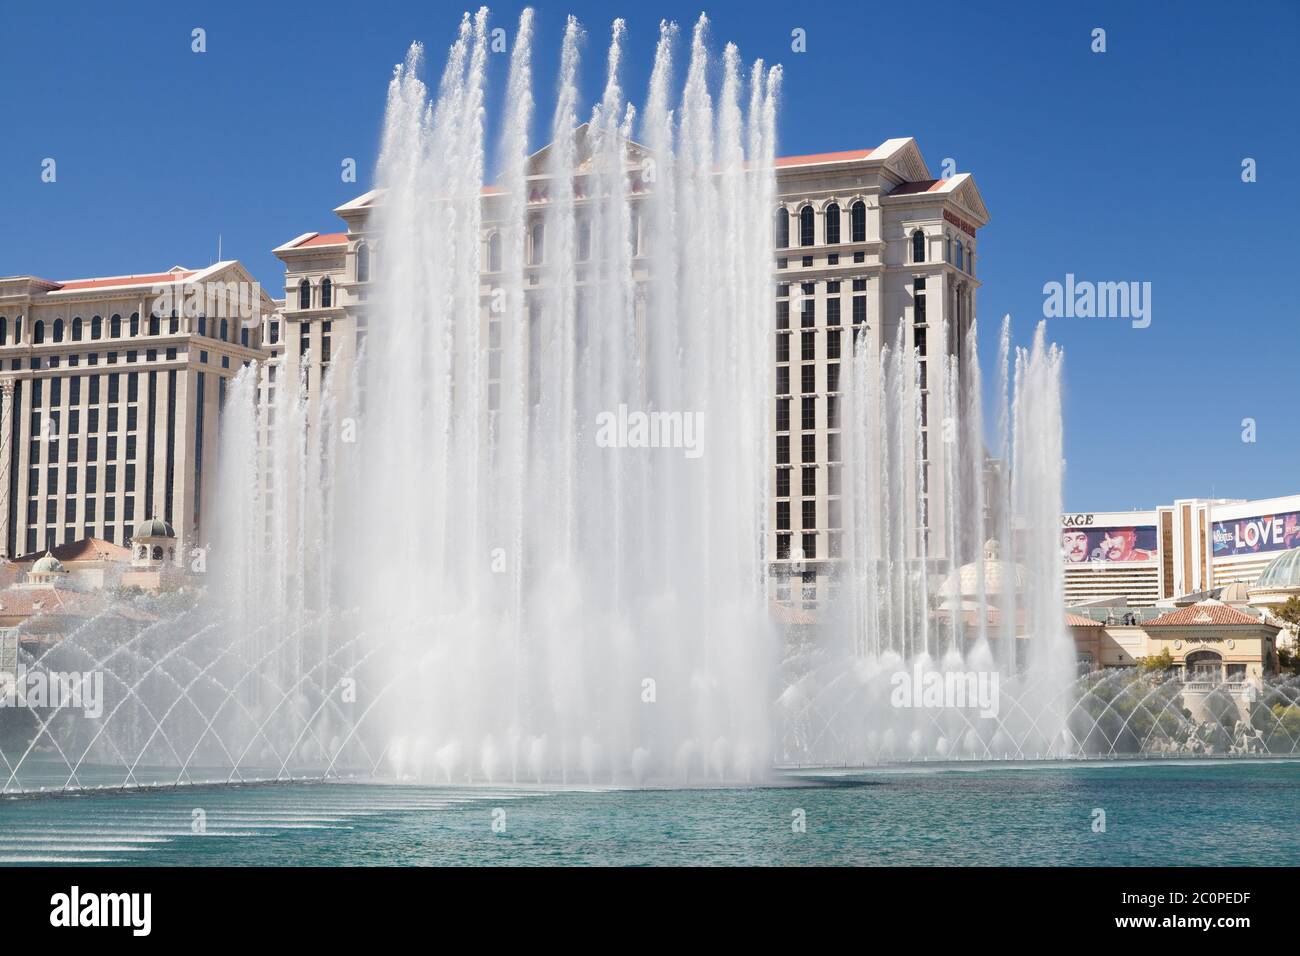 Las Vegas, Nevada - 30. August 2019: Die Springbrunnen des Bellagio während des Tages in Las Vegas, Nevada, USA. Stockfoto